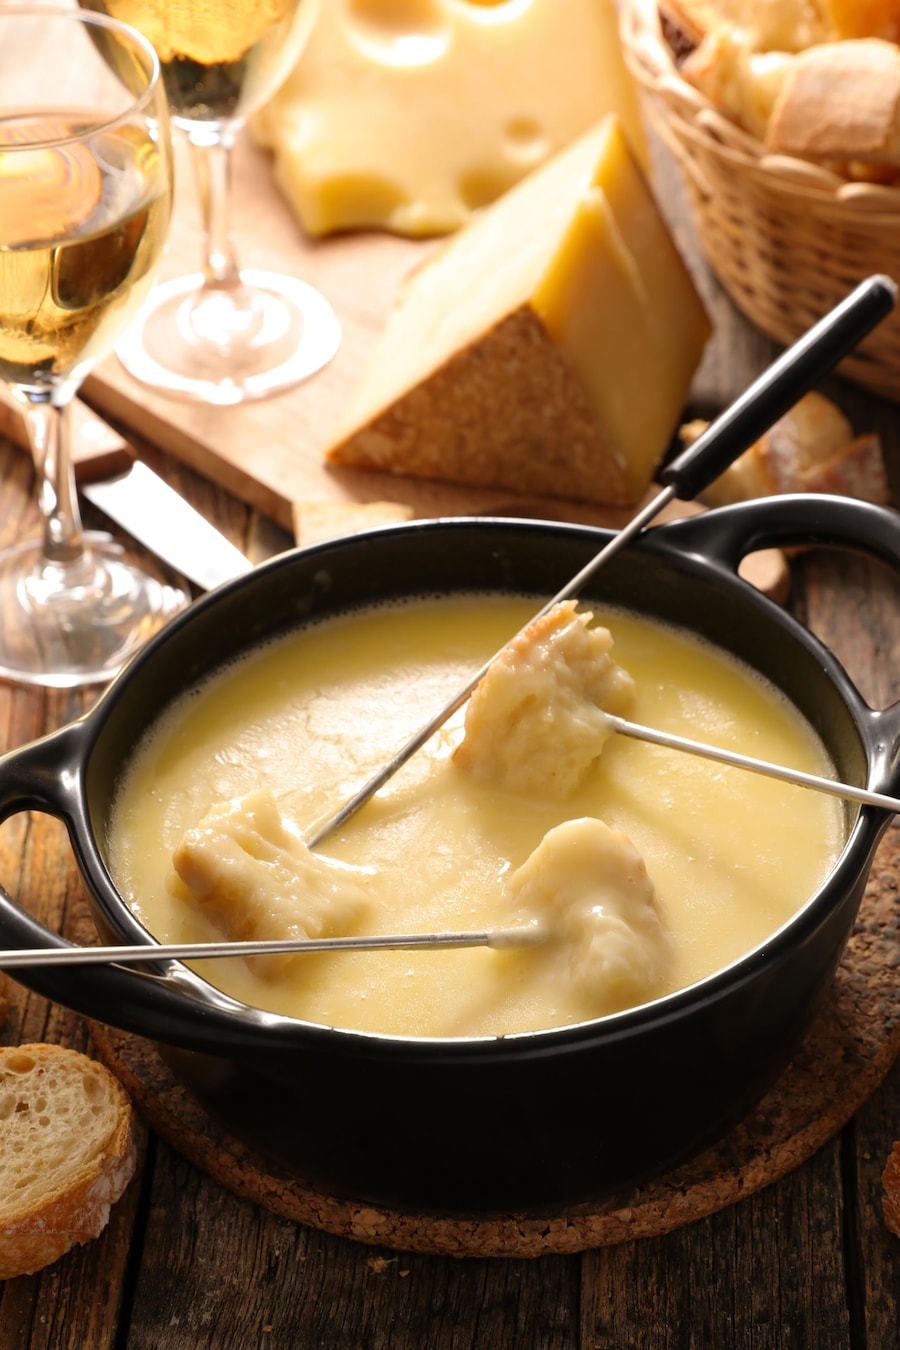 Une fondue au fromage avec deux verres de vin blanc et du pain baguette.